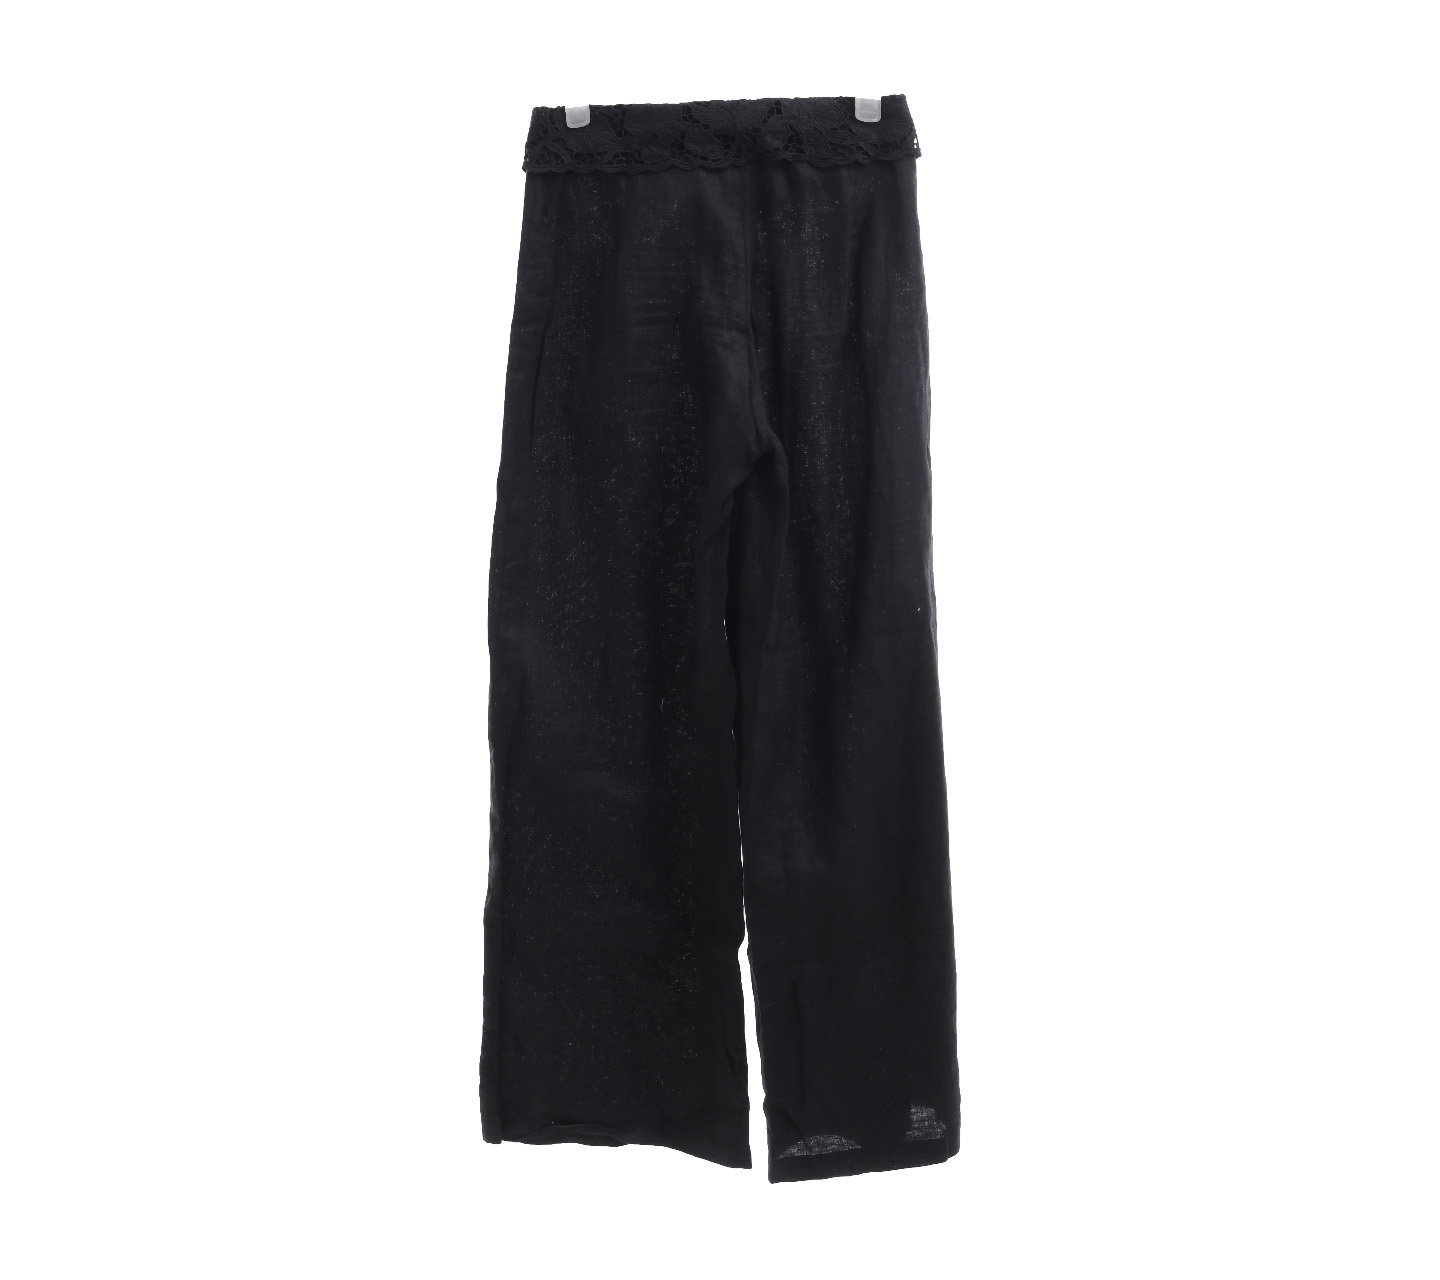 Uluwatu Black Lace Long Pants